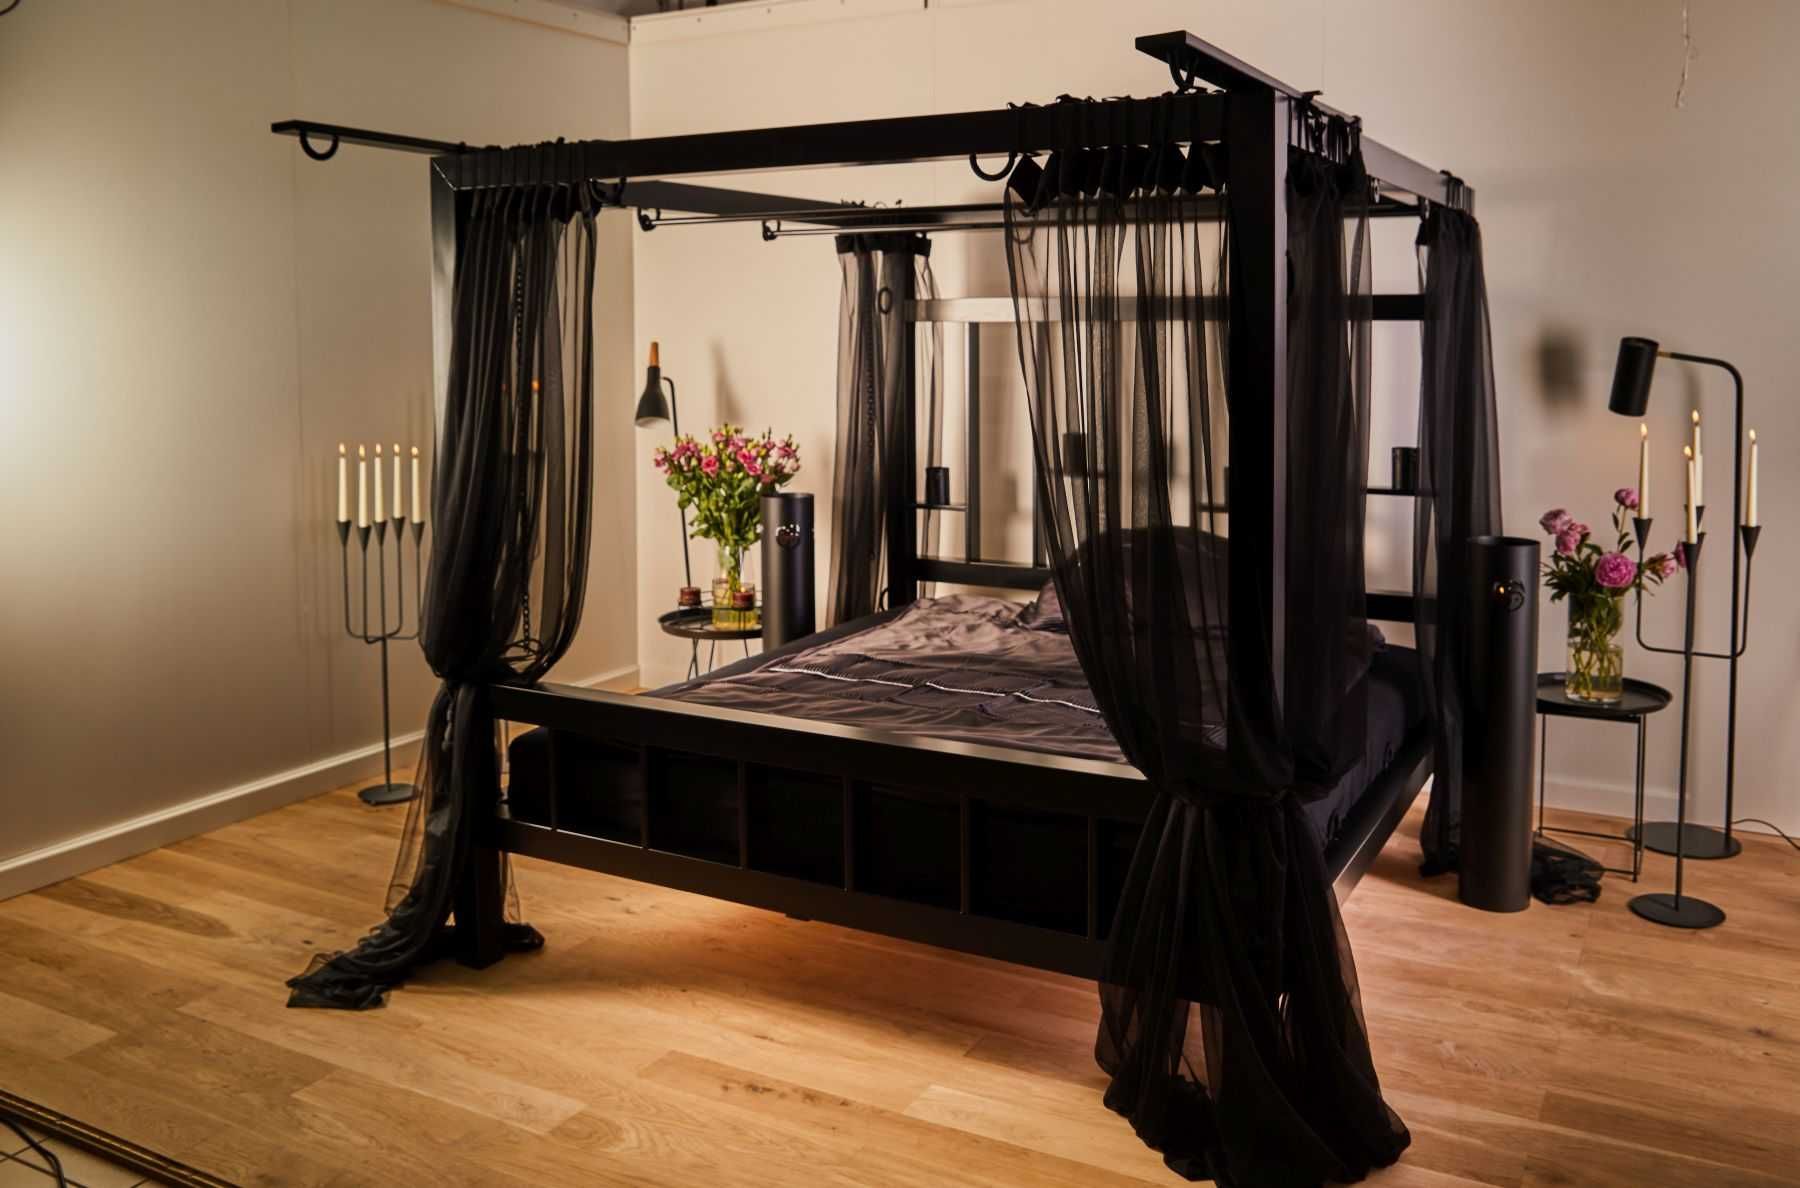 NOWE najmocniejsze łóżko 180 x 200- 160 kg stali -promocja ZIMA